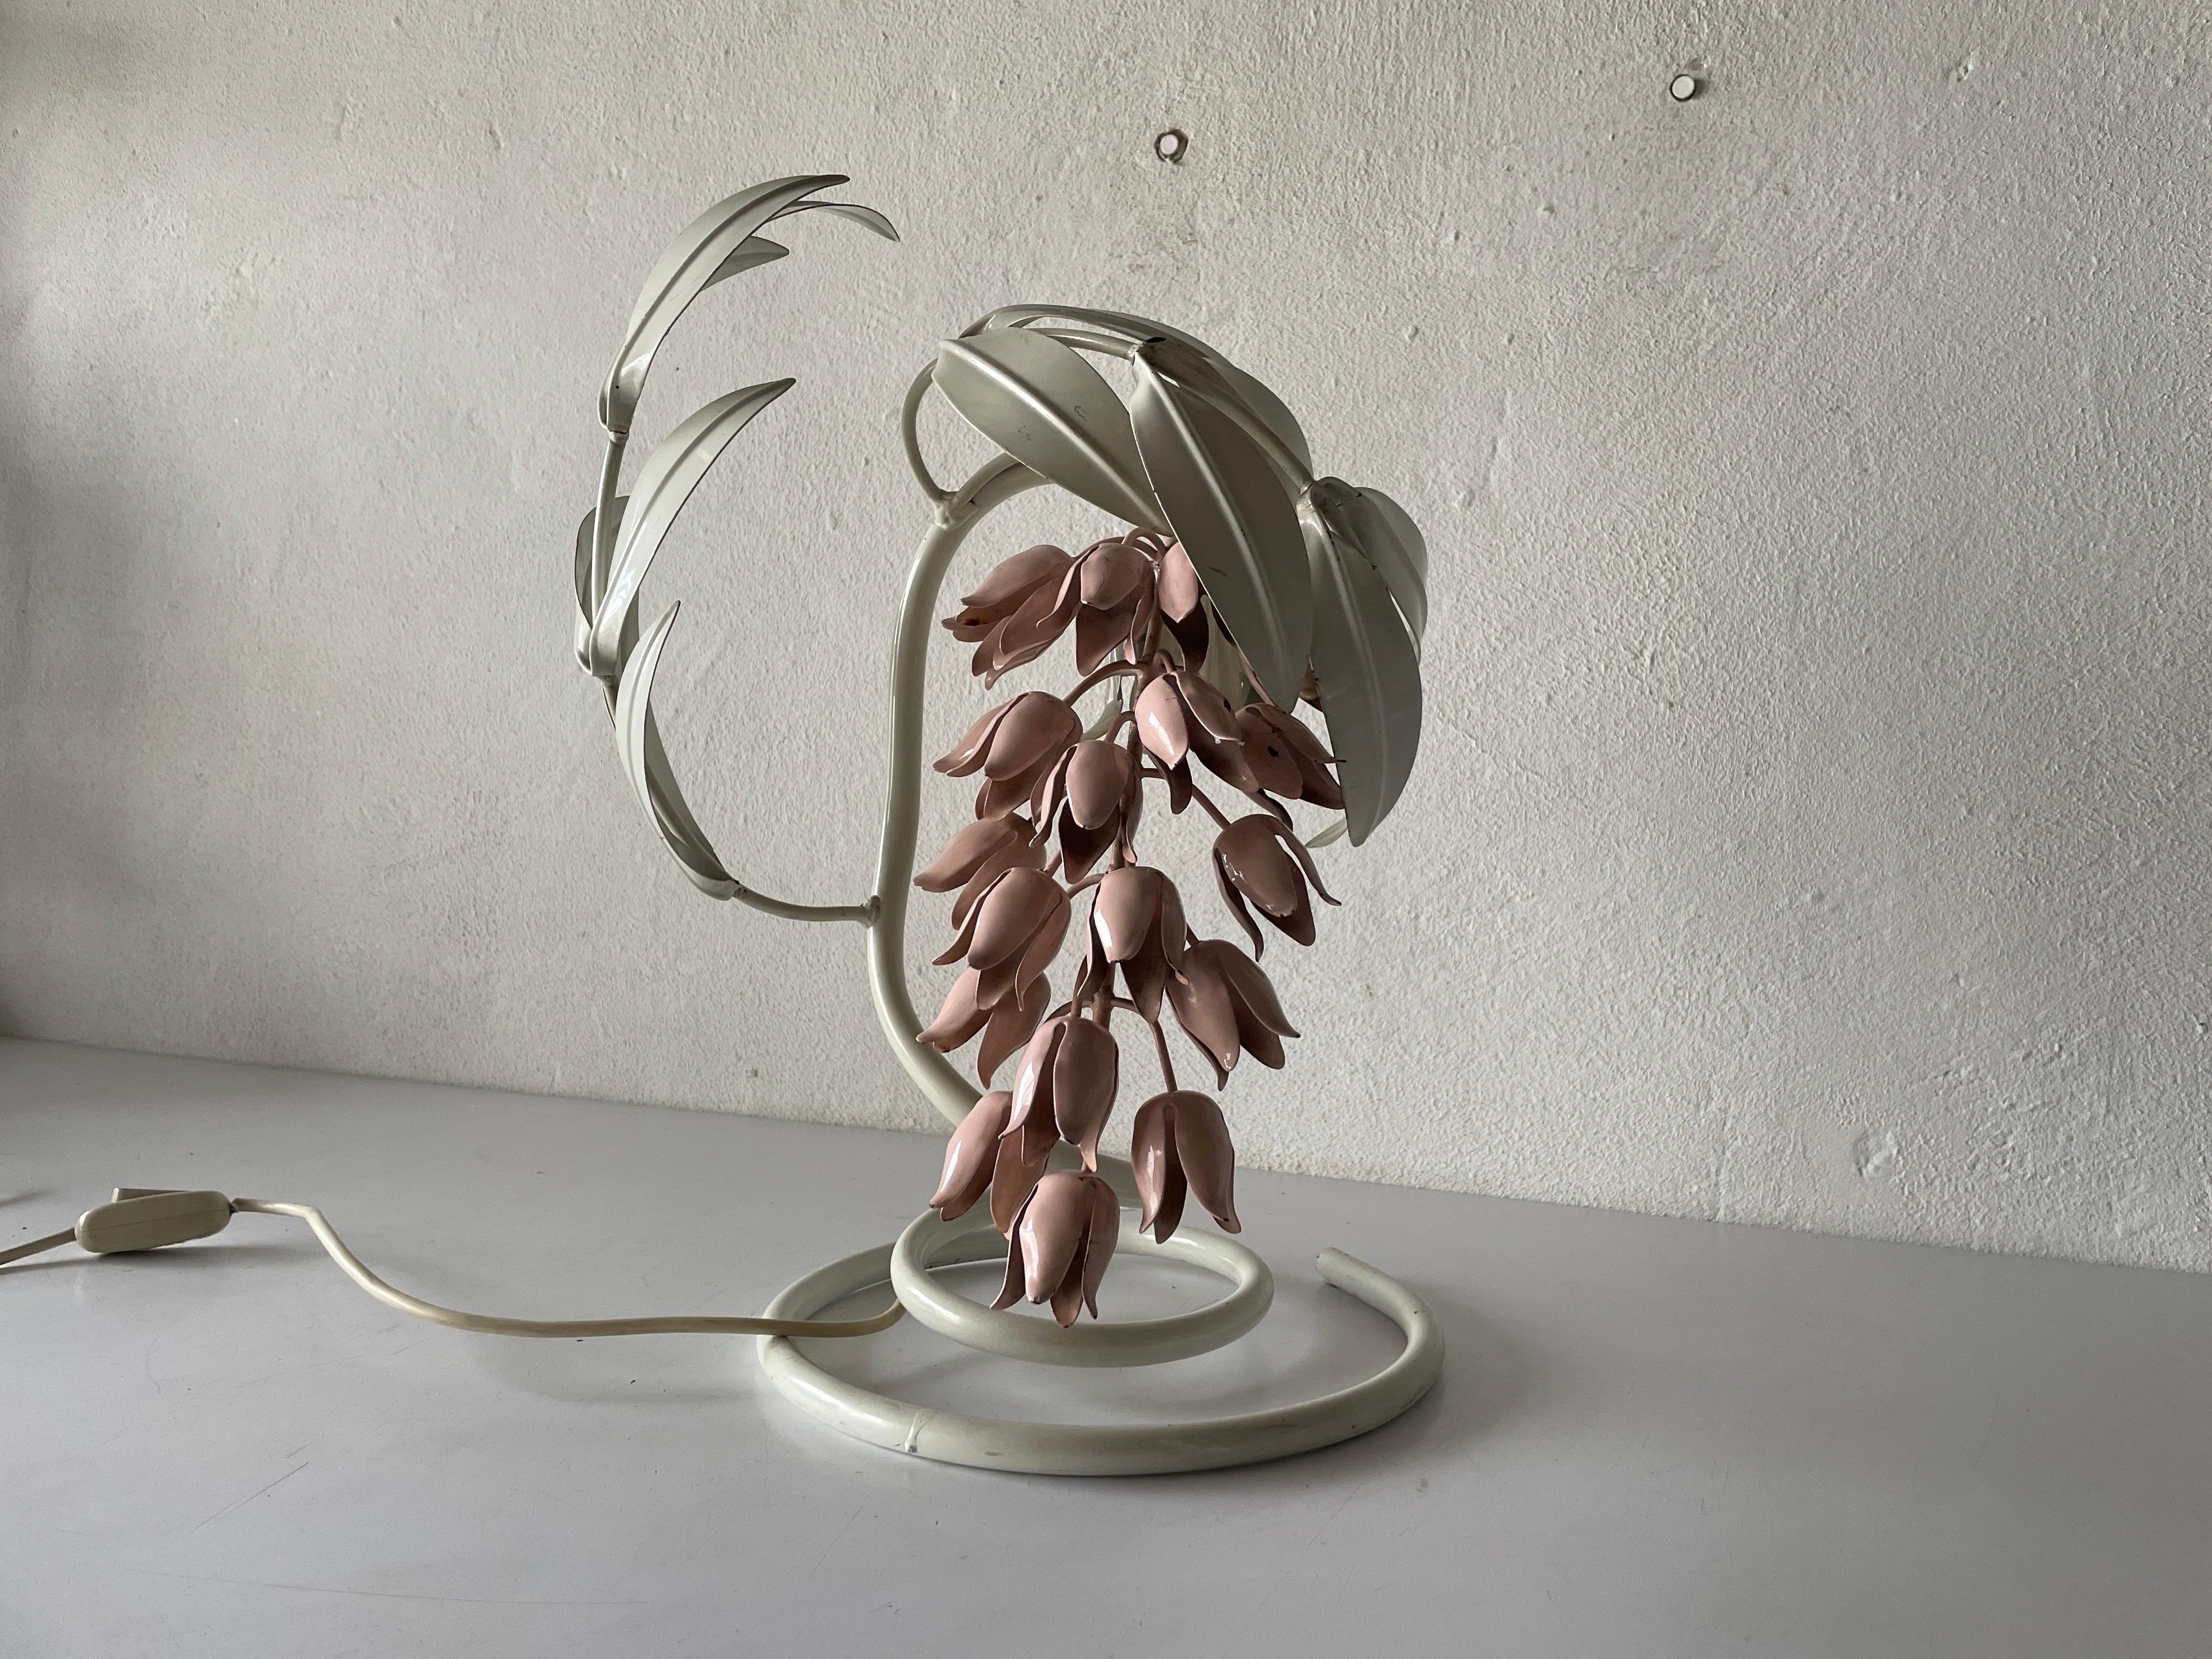 Lampe de table design tulipe blanche et rose, années 1960, Italie.

L'abat-jour est en bon état et très propre. 
Cette lampe fonctionne avec une ampoule E27
Câblé et adapté à une utilisation avec 220V et 110V pour tous les pays.

Mesures :